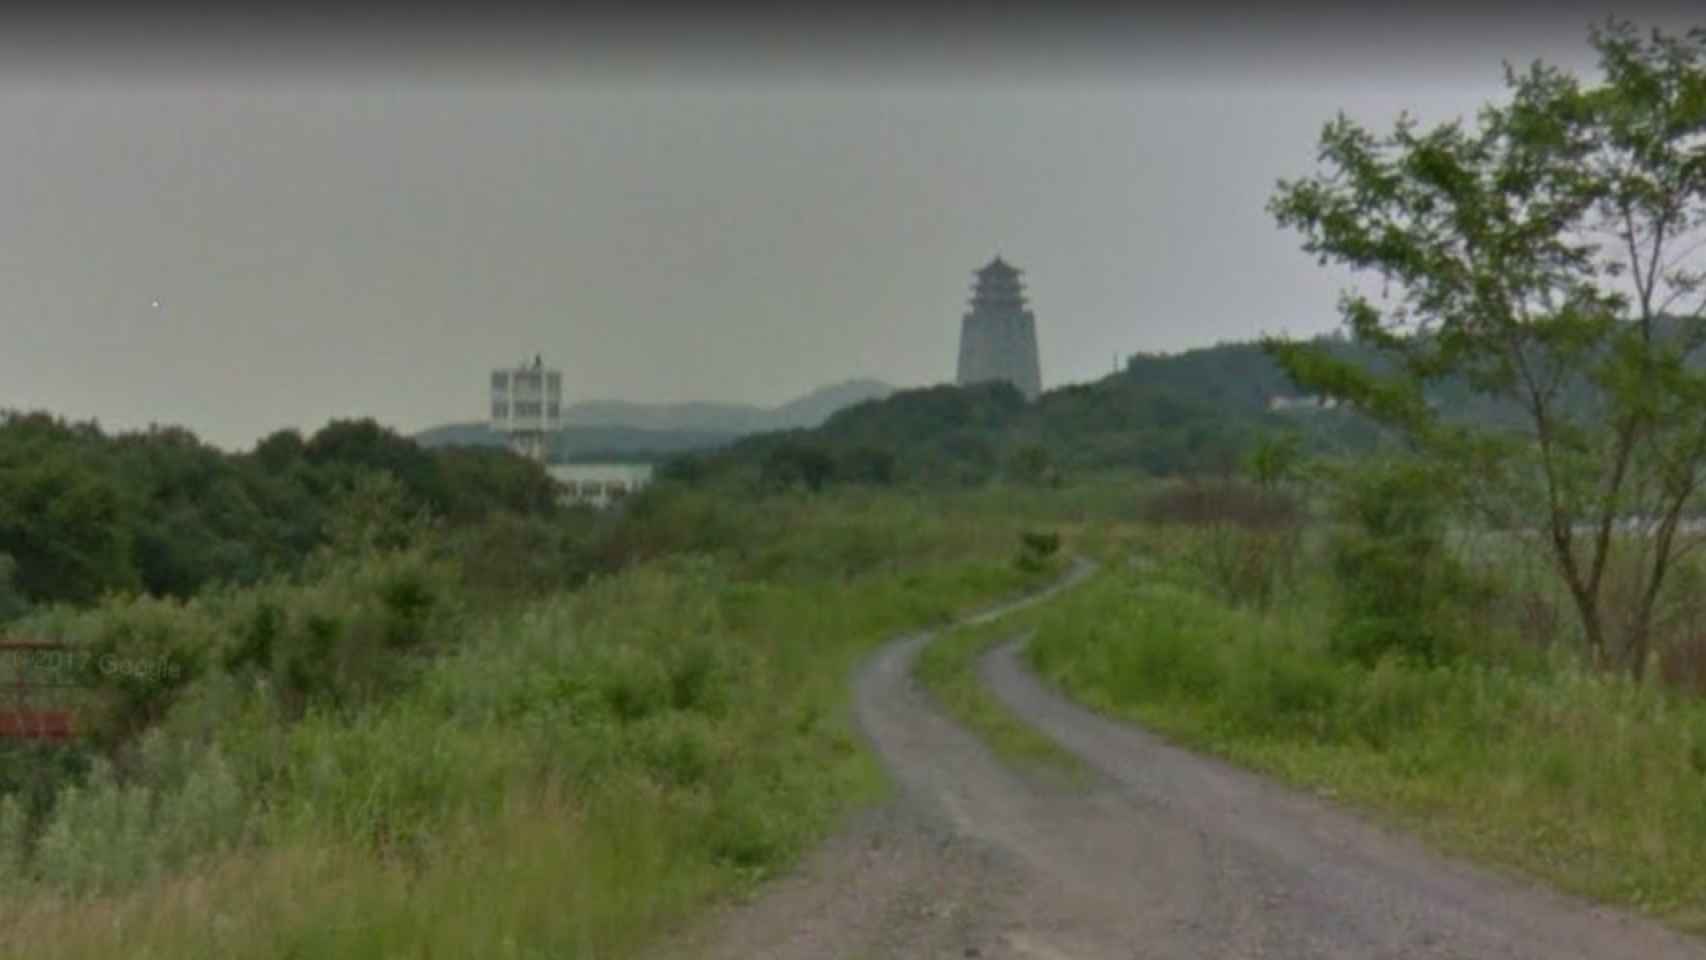 Esta especie de torre de vigilancia también puede verse en el recorrido del Street View de Google Maps